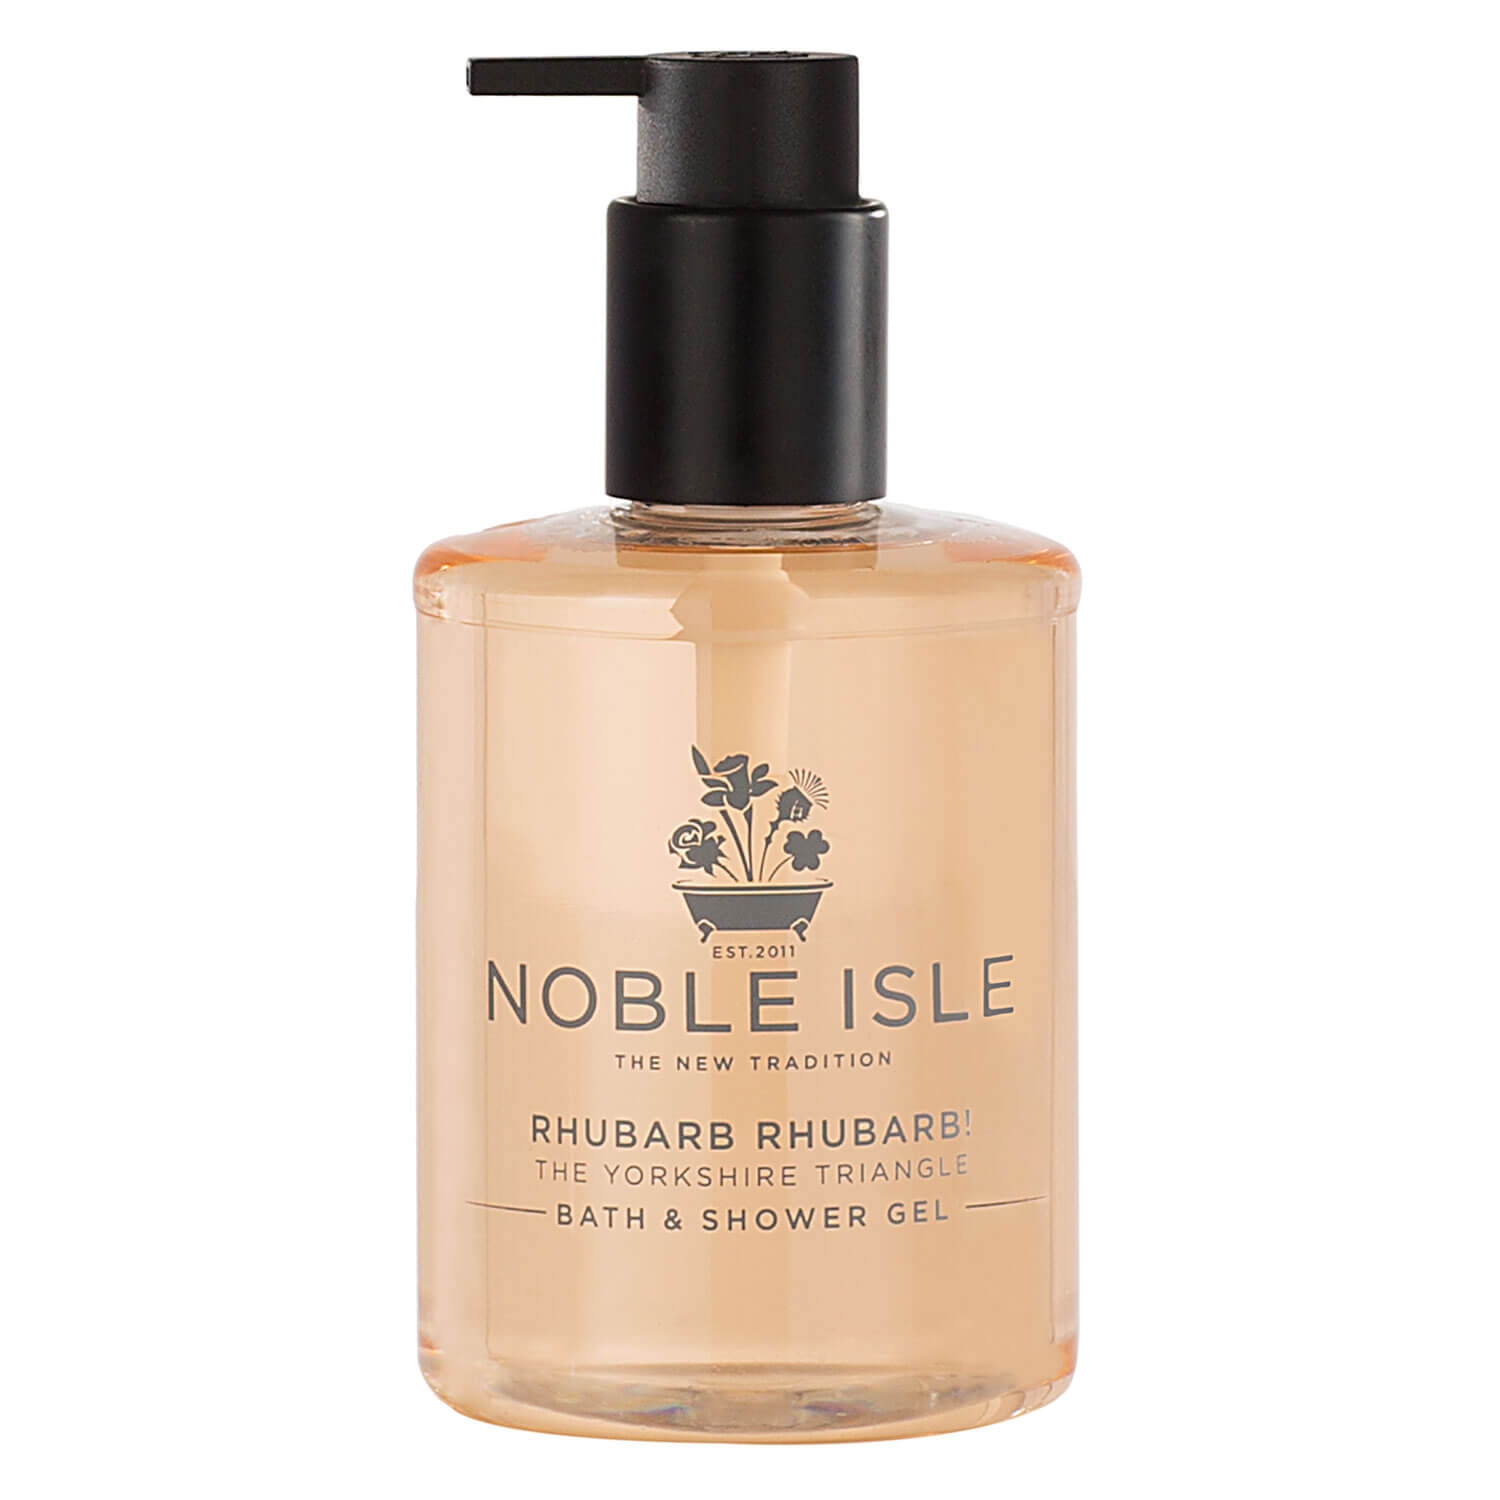 Produktbild von Noble Isle - Rhubarb Rhubarb! Bath & Shower Gel